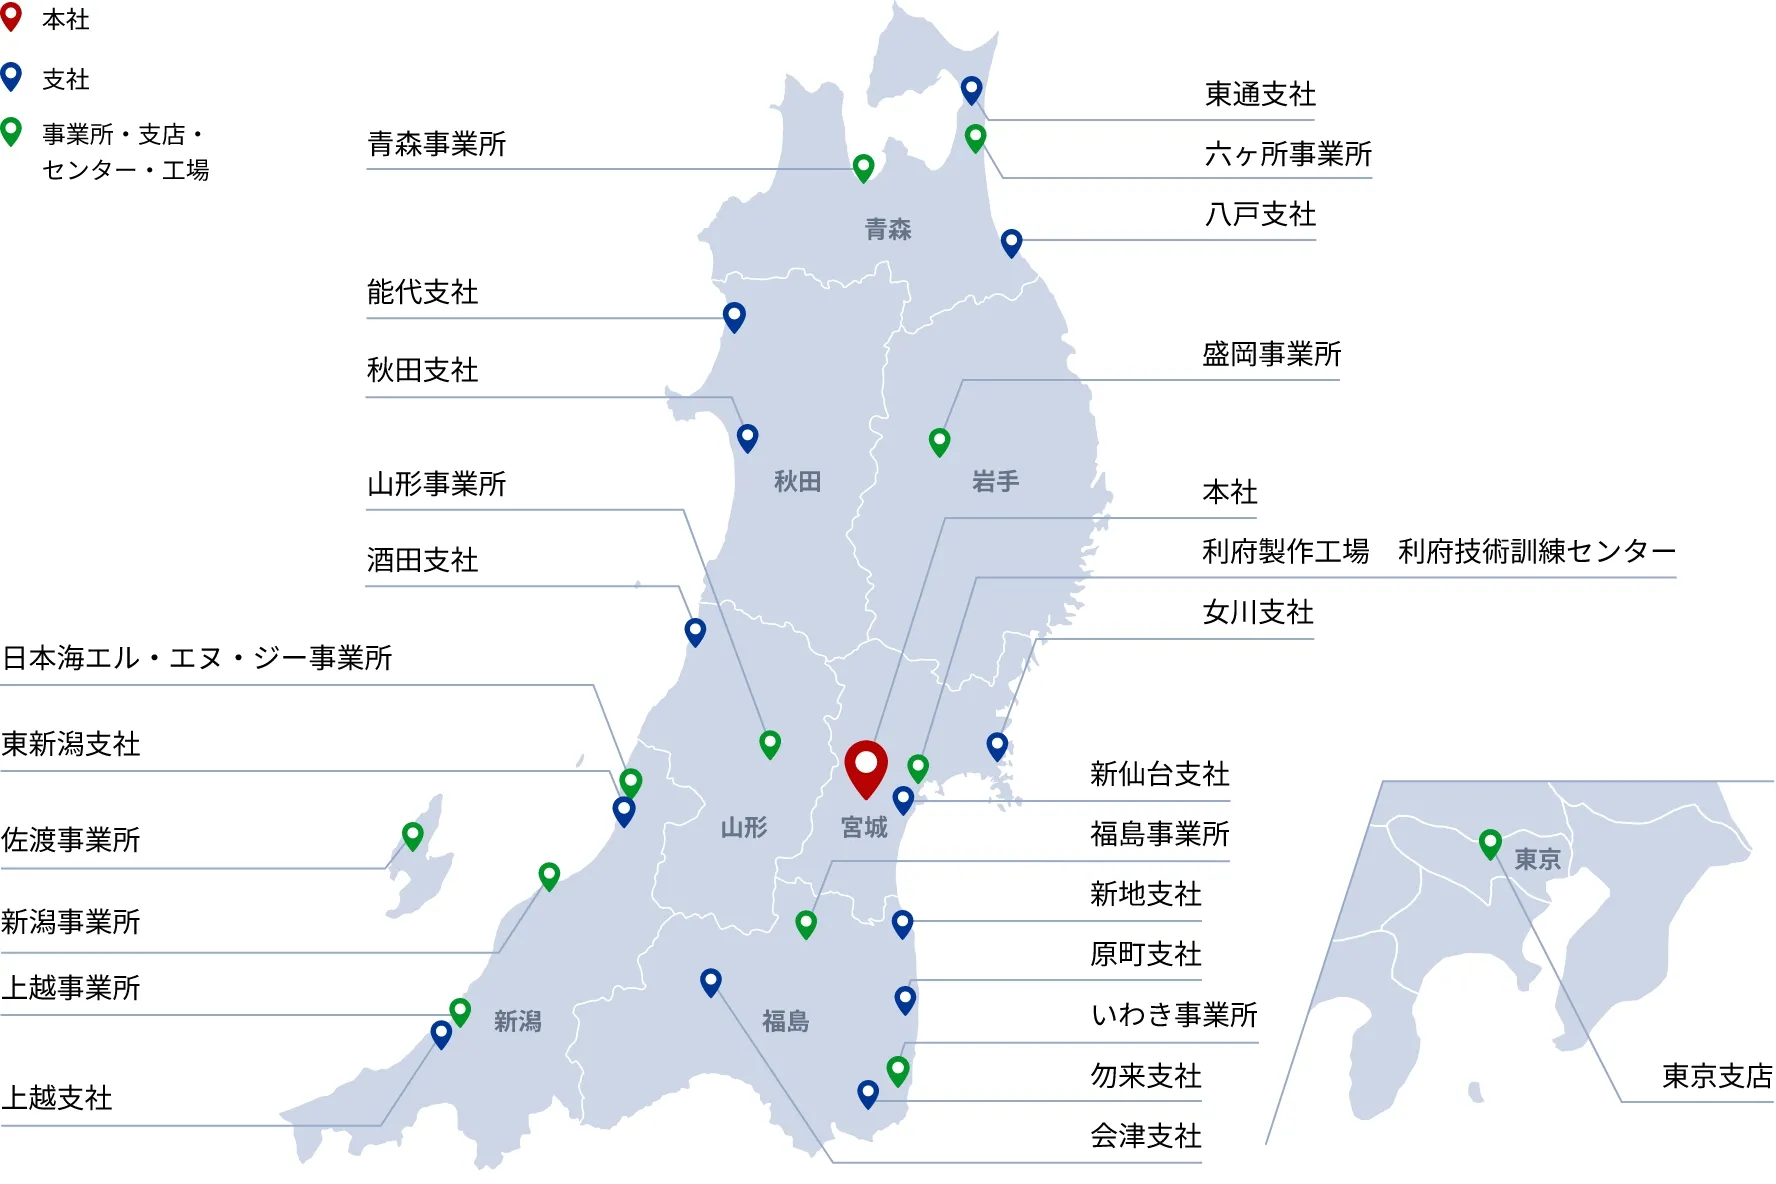 マップ：東北６県に展開されている事業所と東京支所